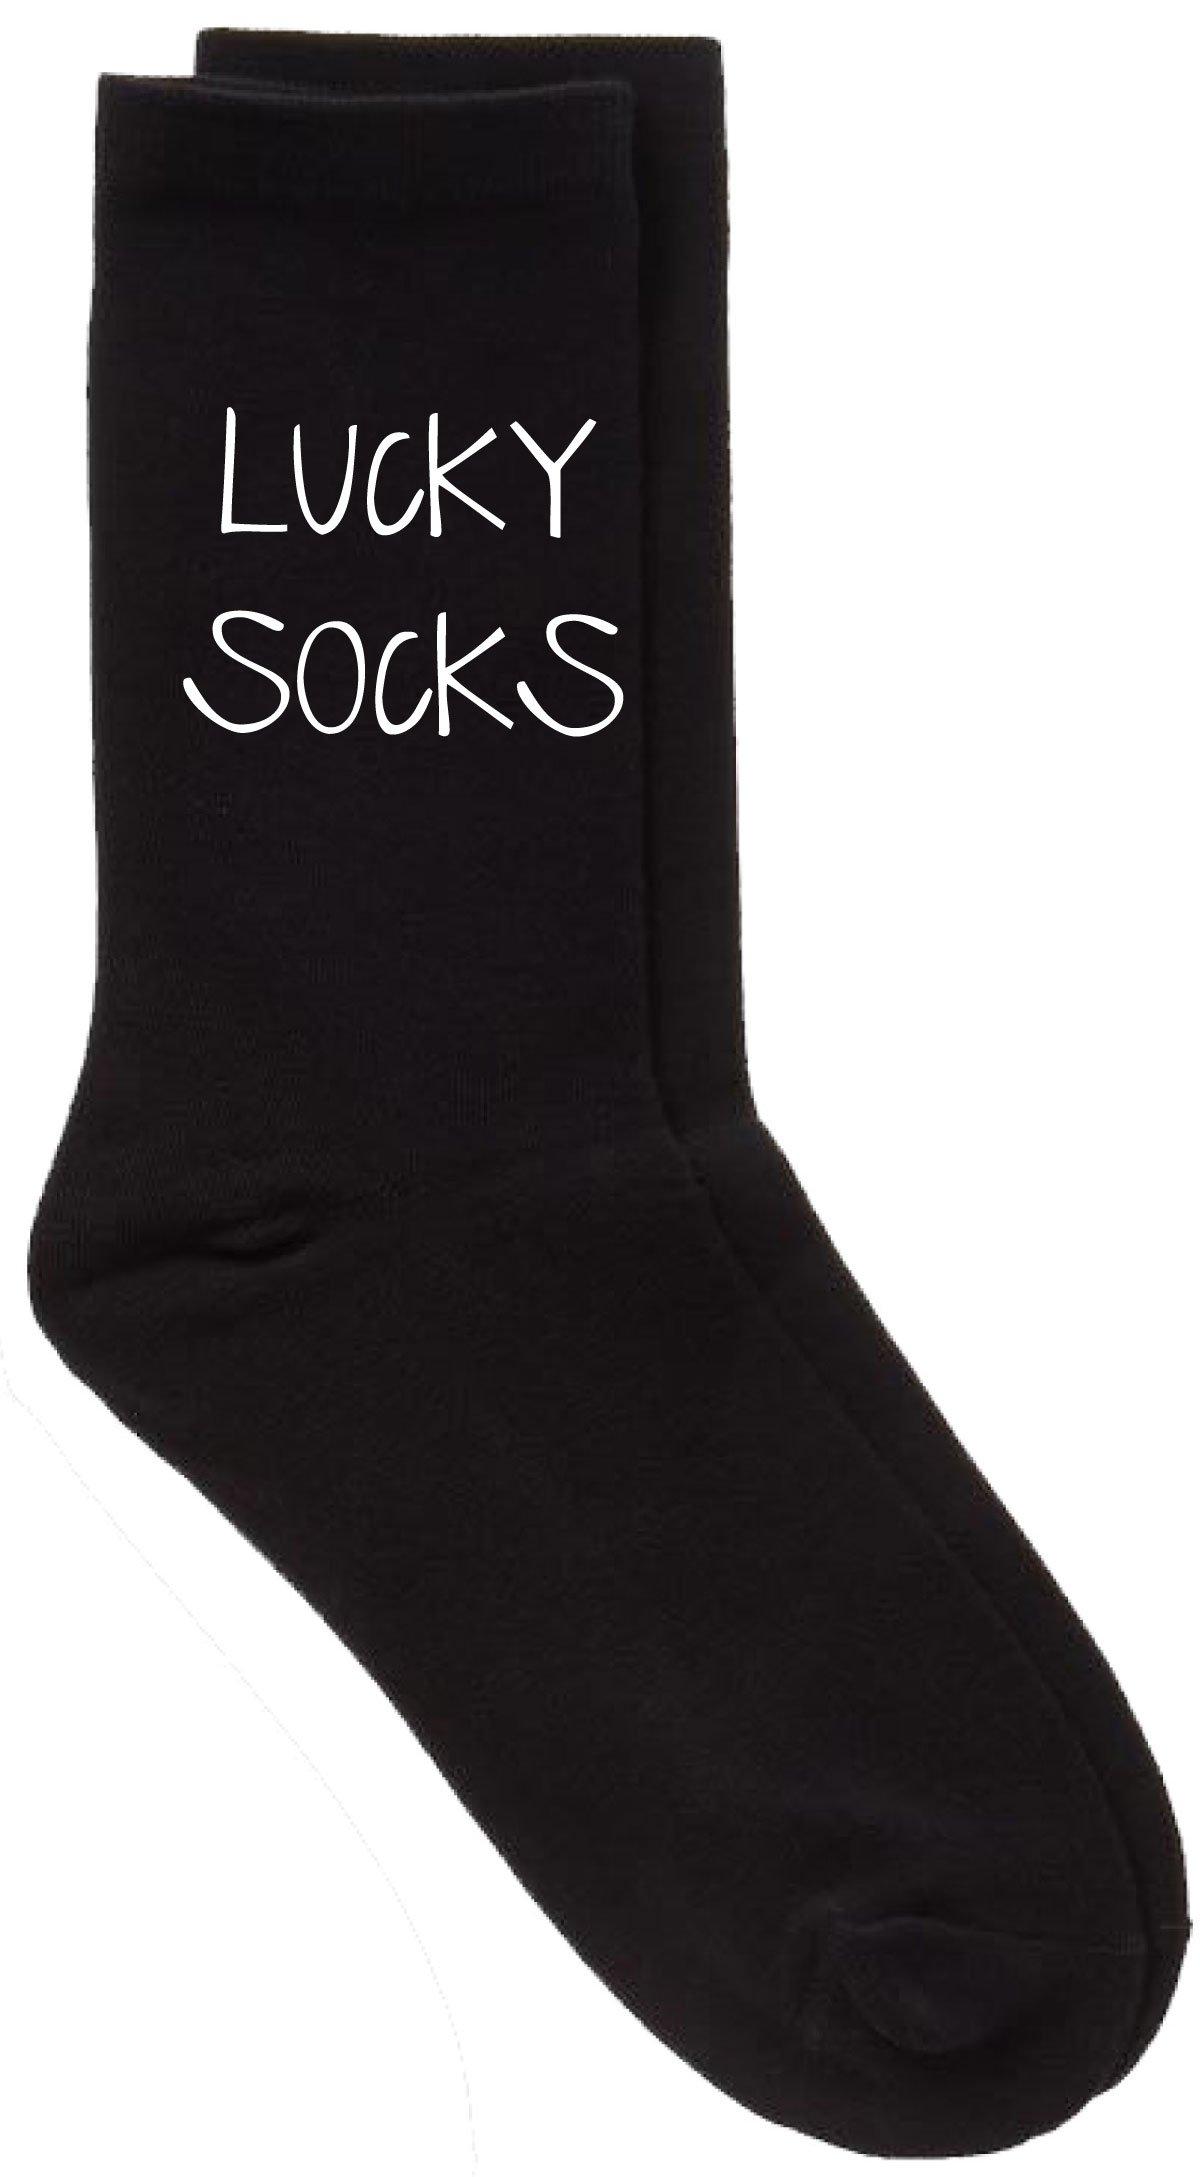 Lucky Socks Black Calf Socks Gift Socks